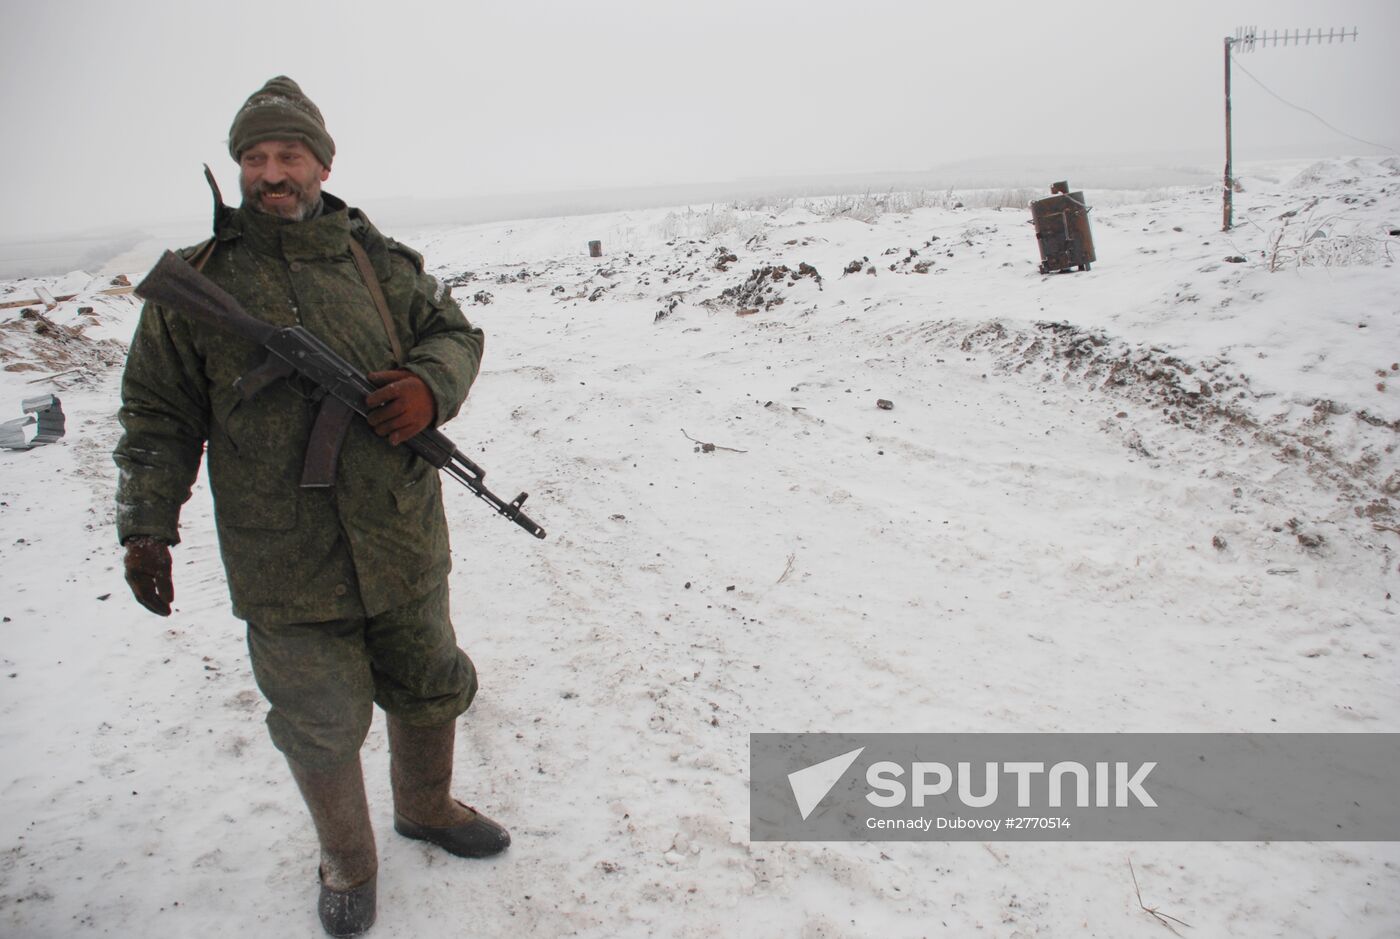 DPR militiamen on demarcation line